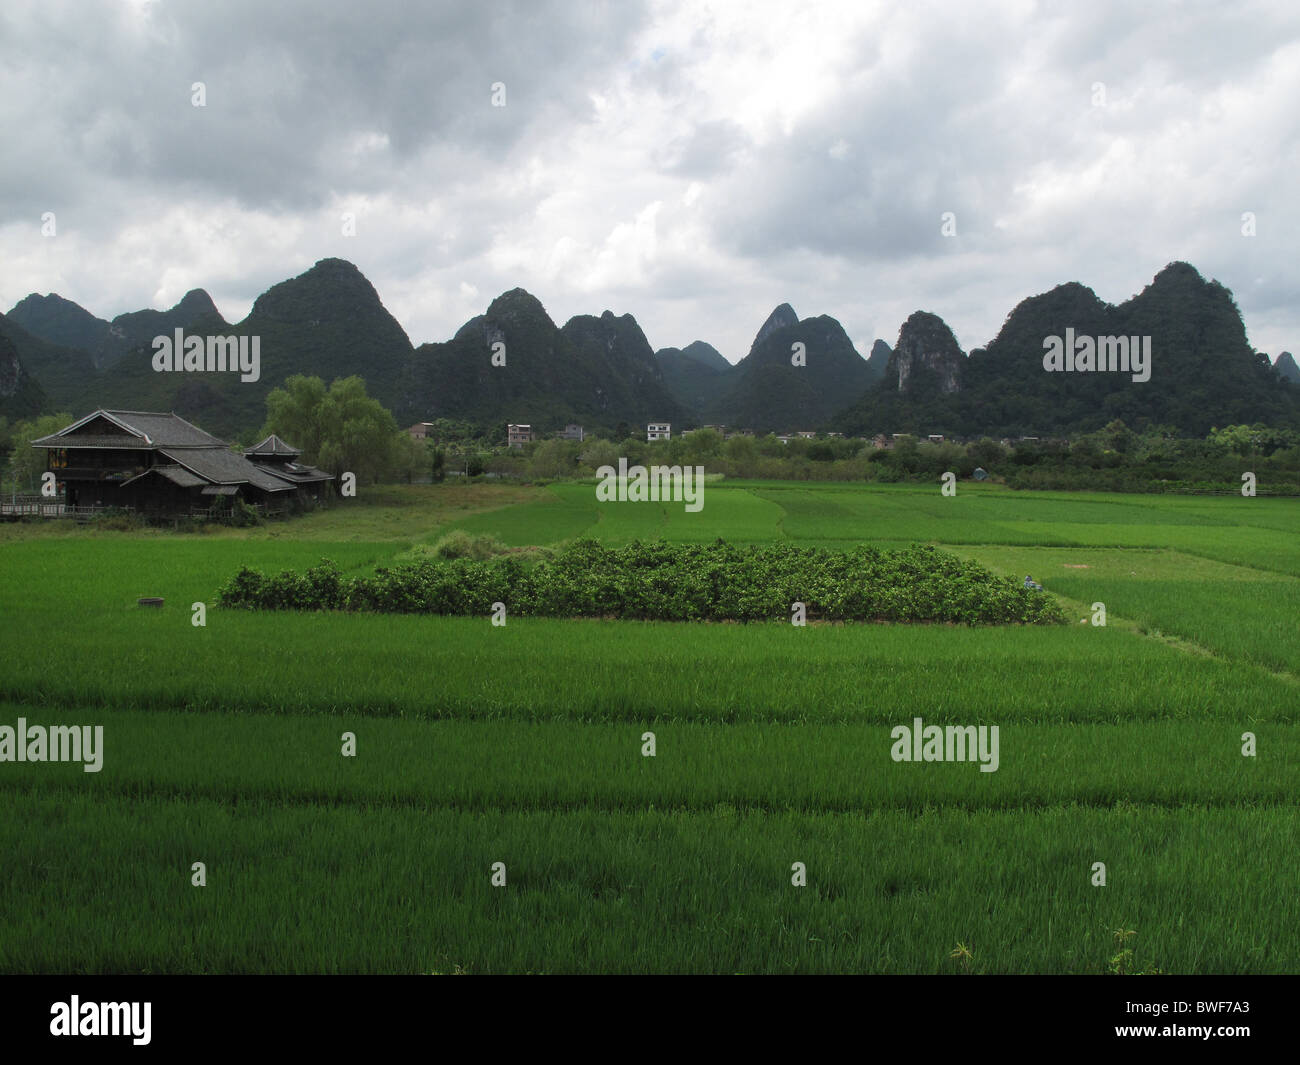 Shangri La, Guanxi Province, CHINA. Stock Photo